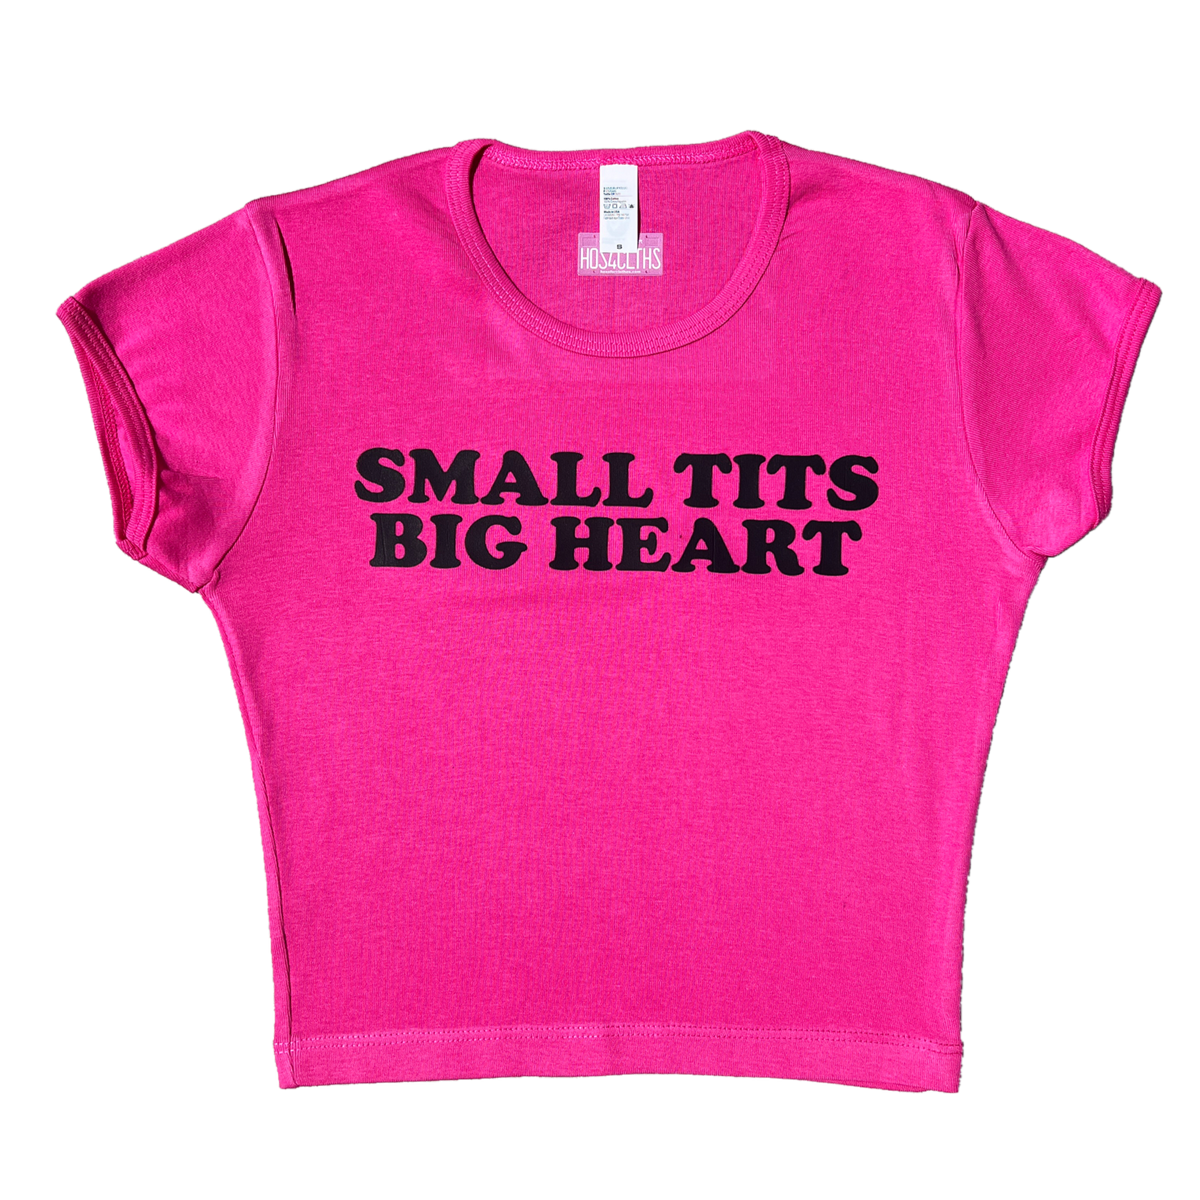 Flat Chest Big Heart T-Shirt